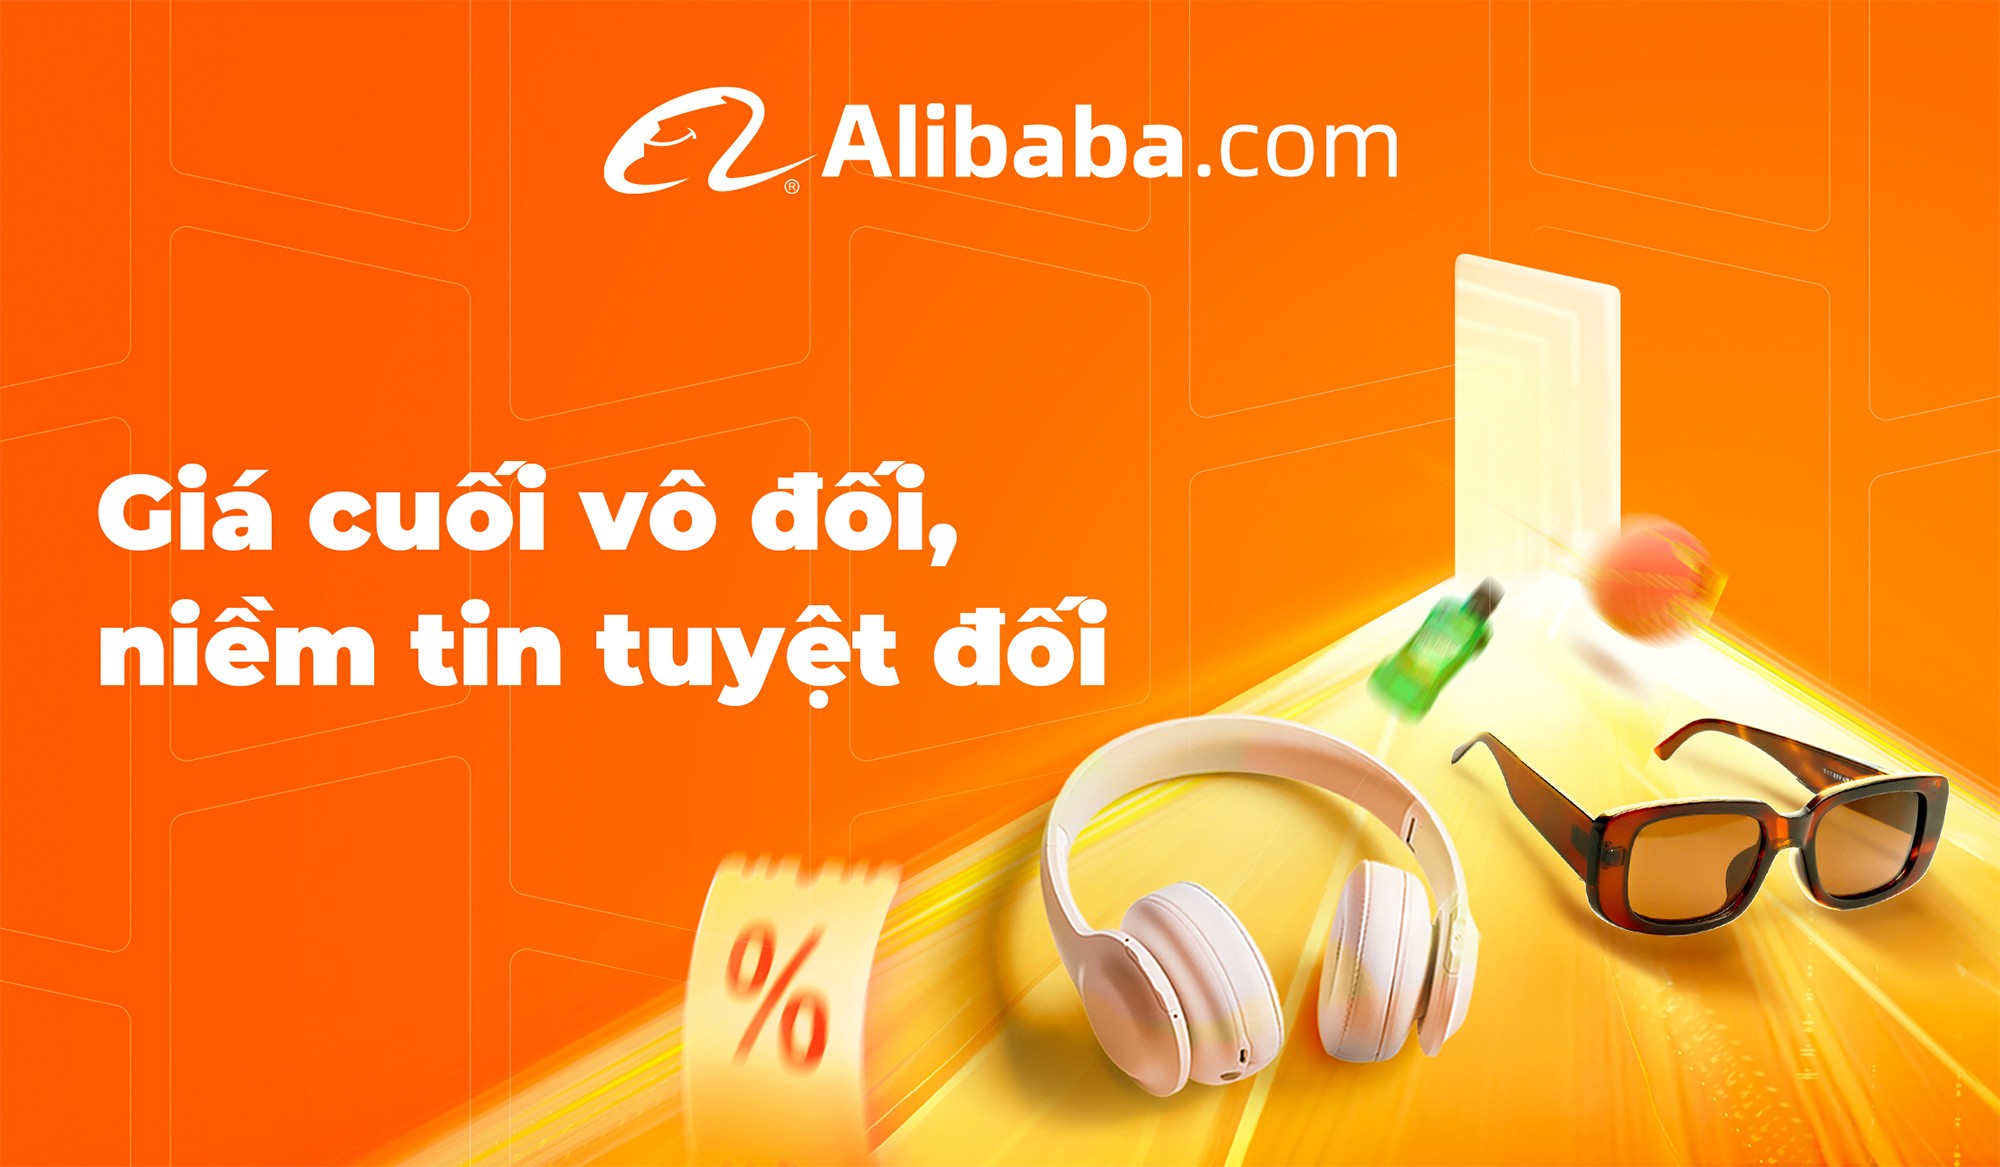 Alibaba.com ra mắt Lễ hội Dự trữ hàng dịp Tết Nguyên Đán đầu tiên tại Đông Nam Á